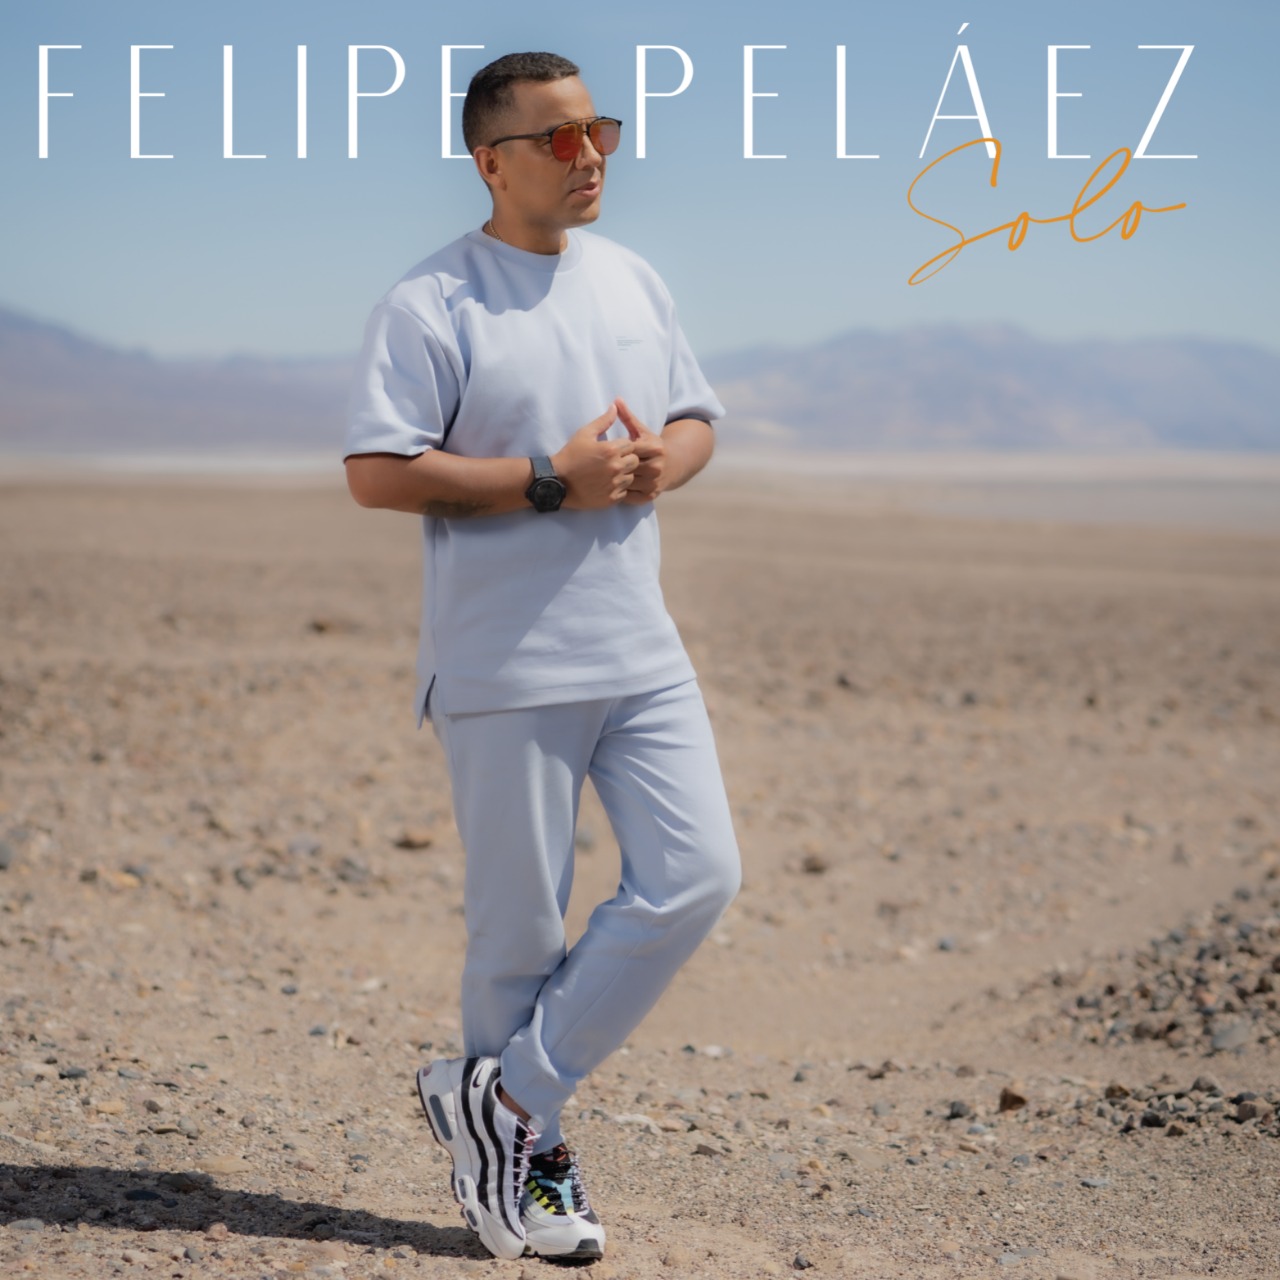 Demostrando su versatilidad, Felipe Peláez presenta su nuevo sencillo «Solo» – @FelipePelaez